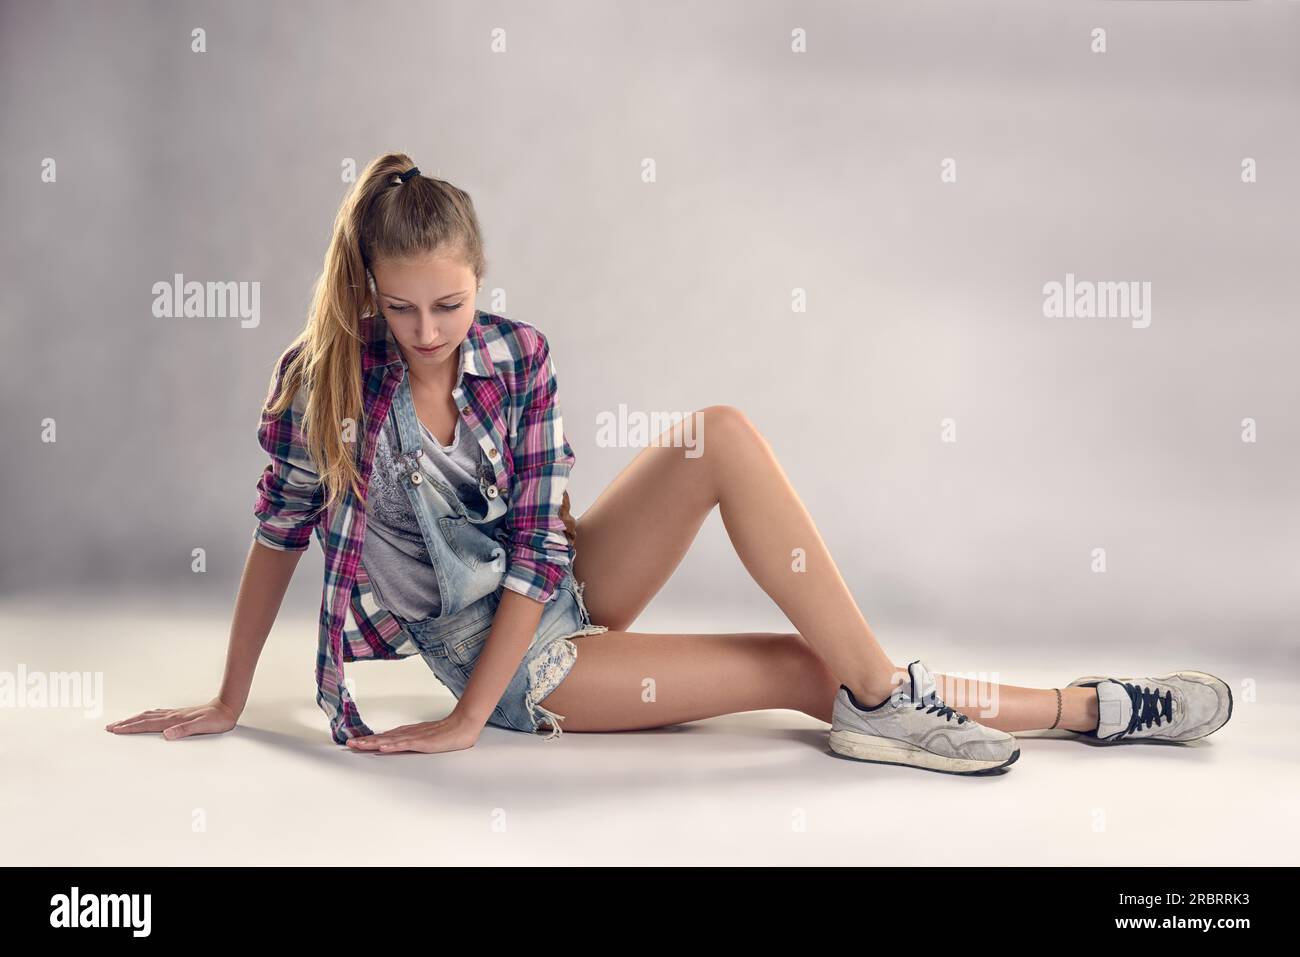 Stilvolle junge, moderne weibliche Tänzerin, die auf dem Boden sitzt, mit einem durchdachten Gesichtsausdruck vor grauem Wandhintergrund Stockfoto